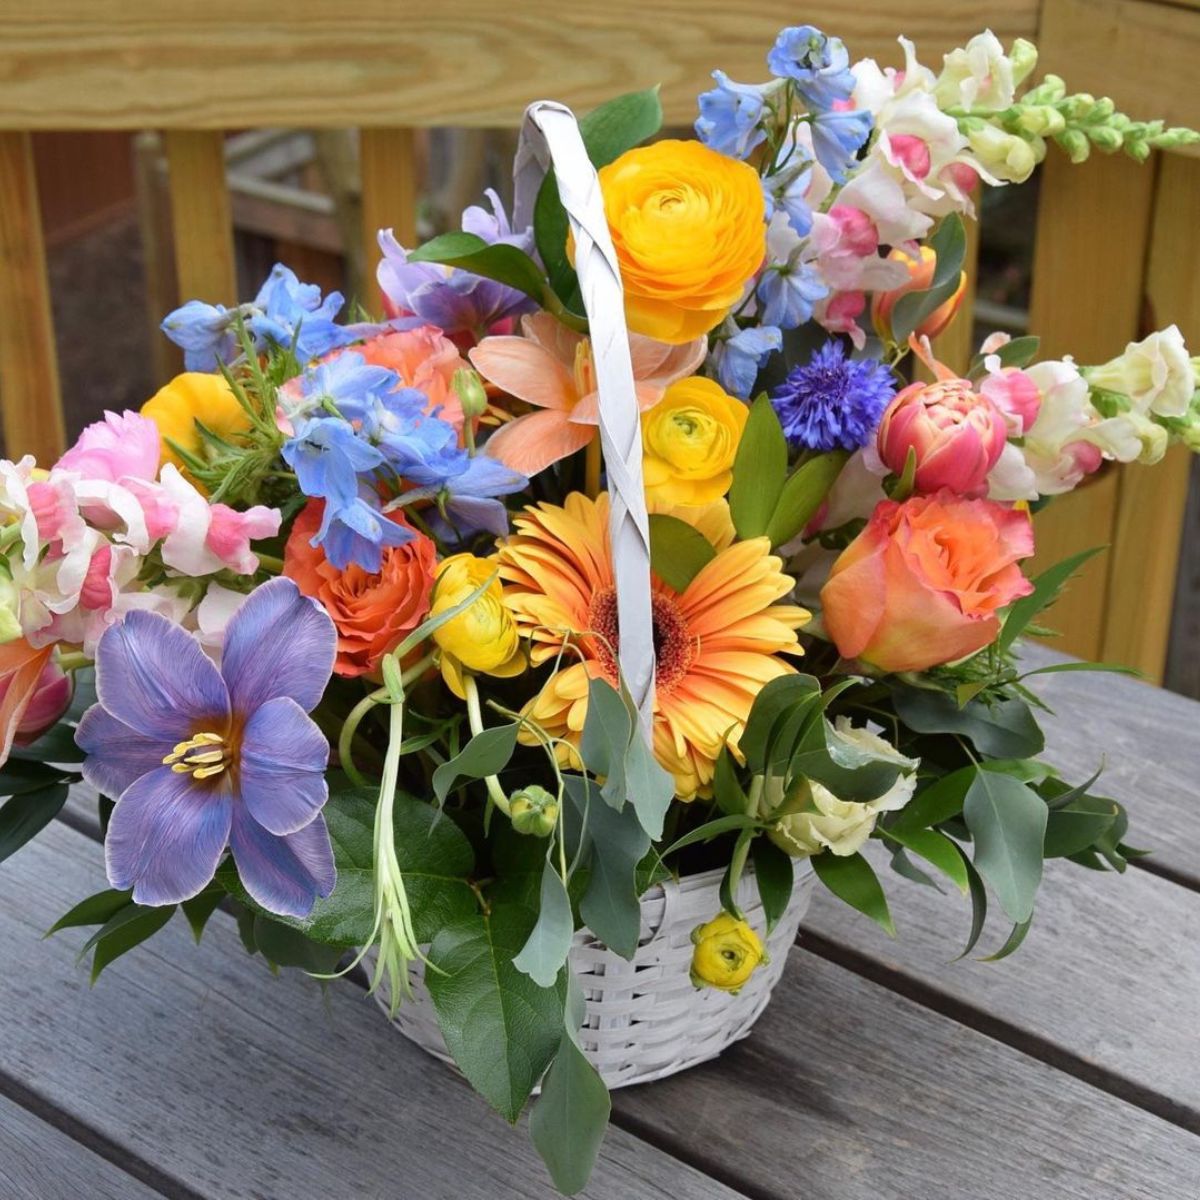 Colorful Easter flower basket